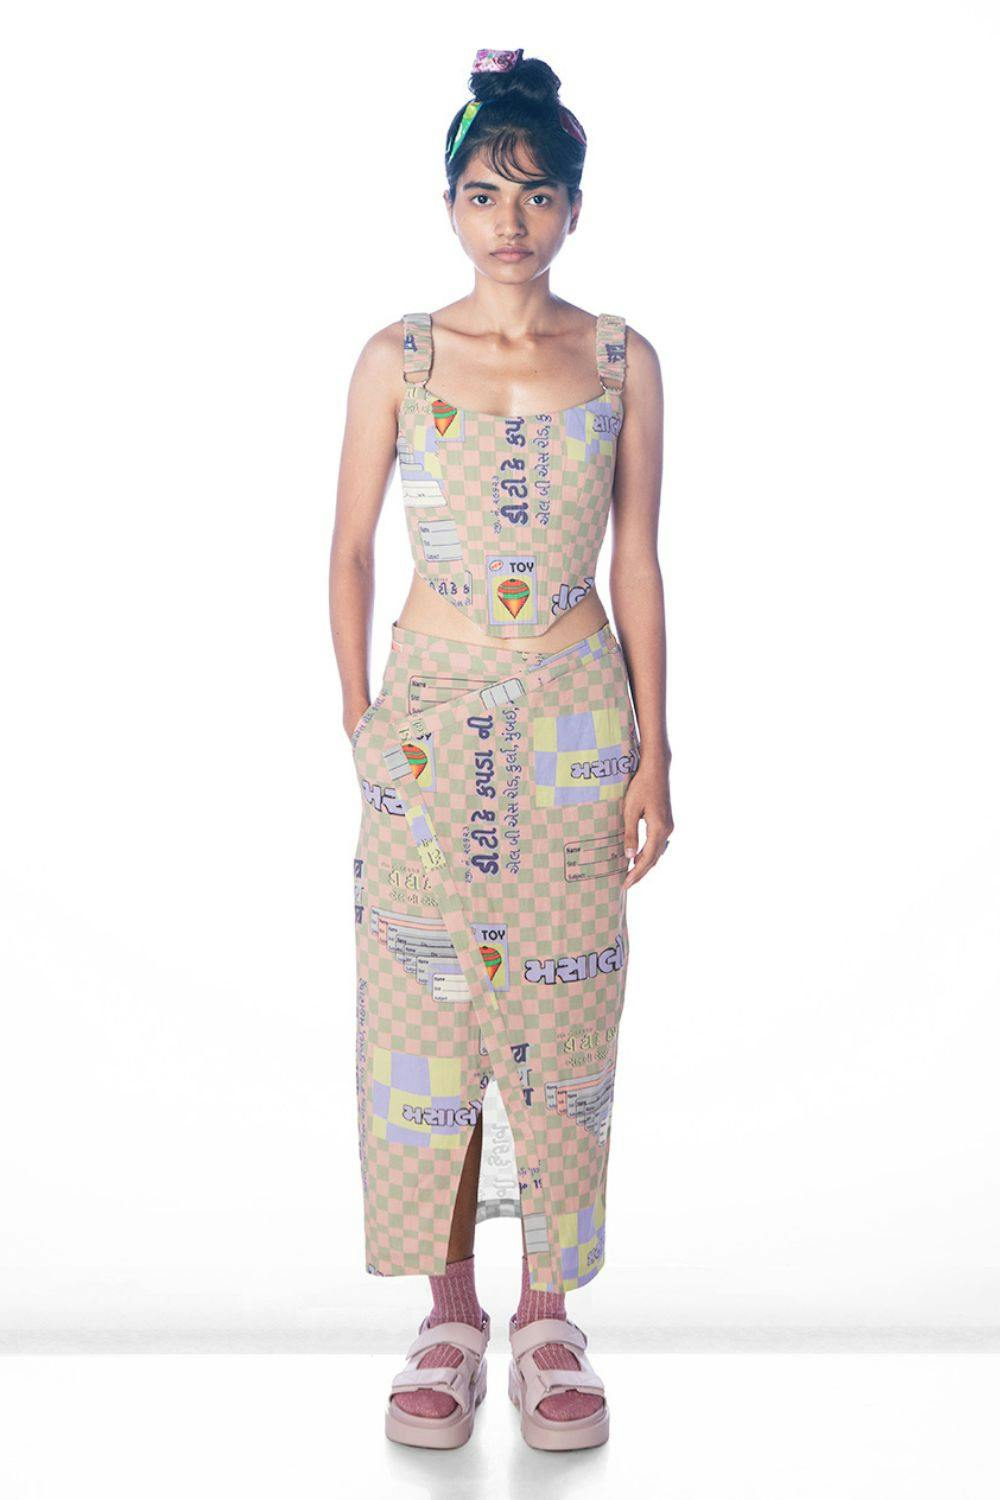 Mirchmasala Corset + Mirchmasala Skirt, a product by Doh tak keh